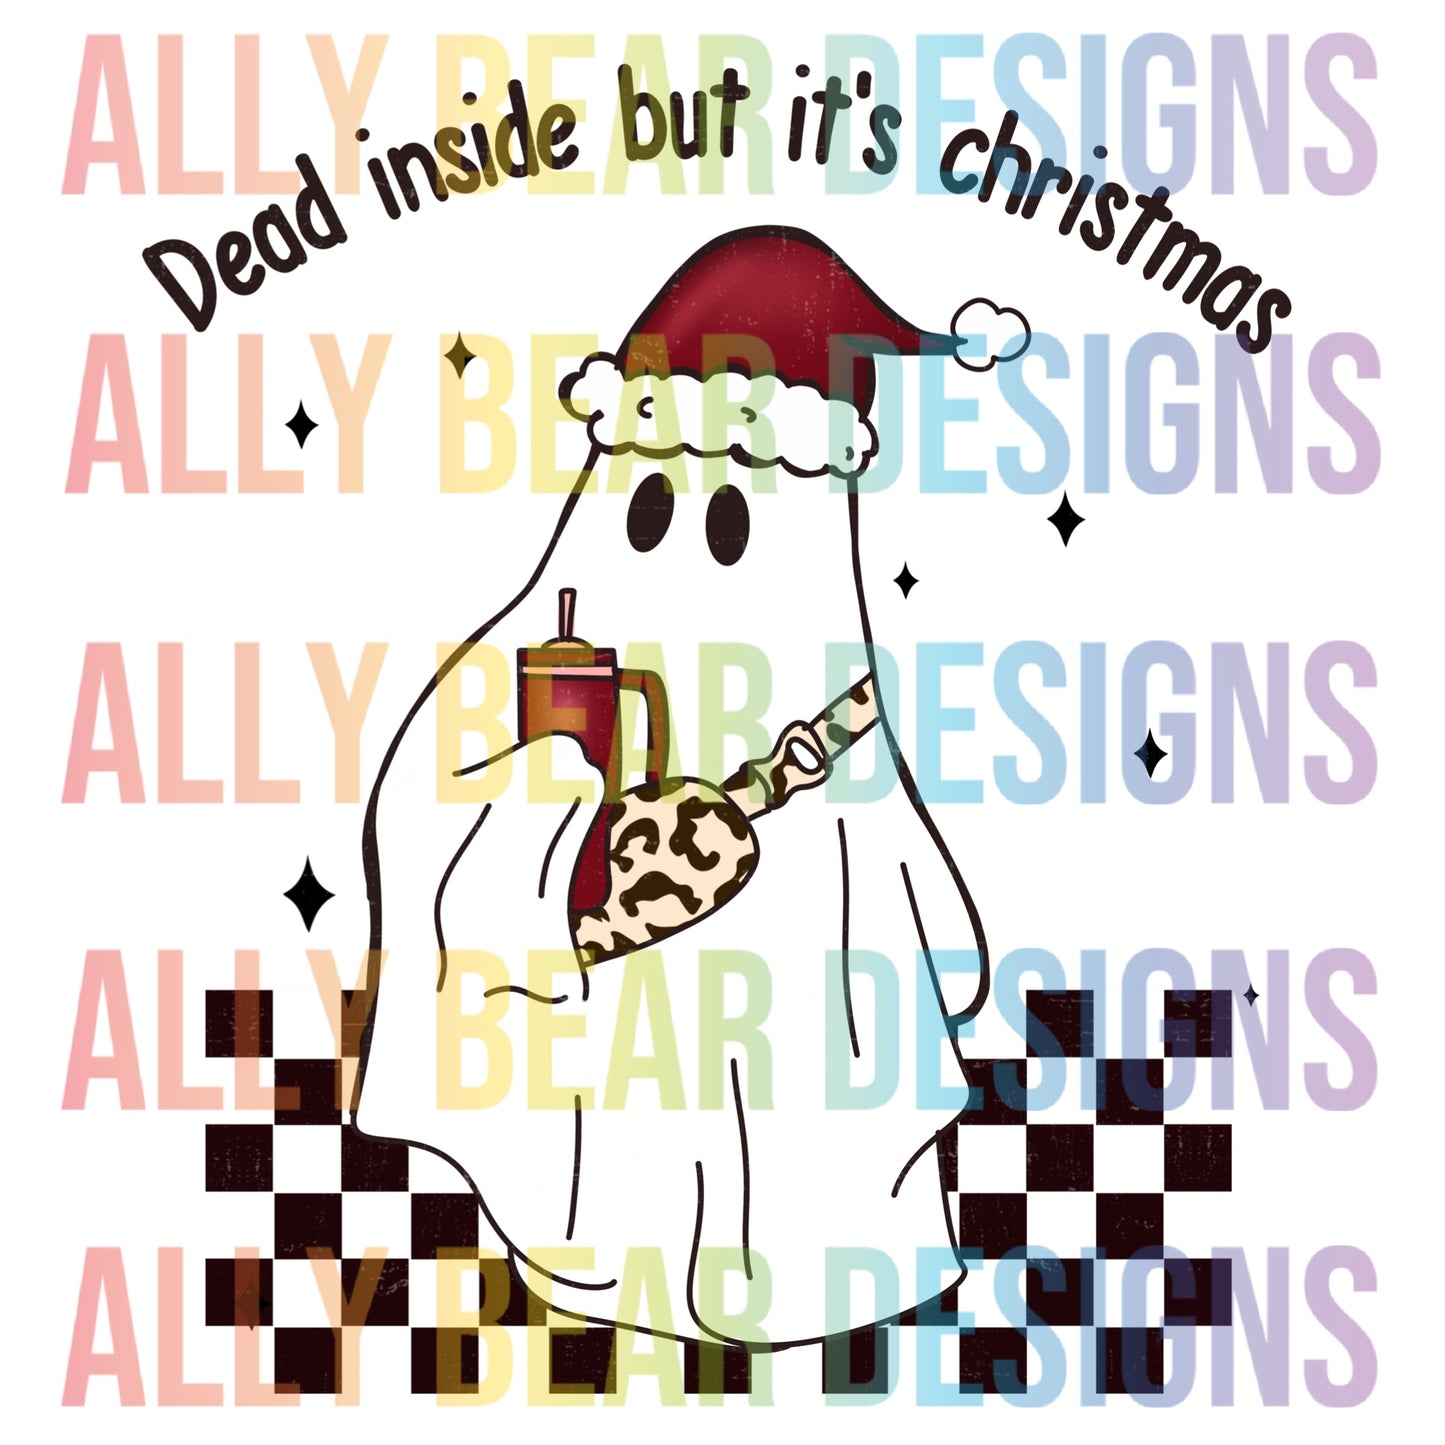 Dead Inside but it’s Christmas